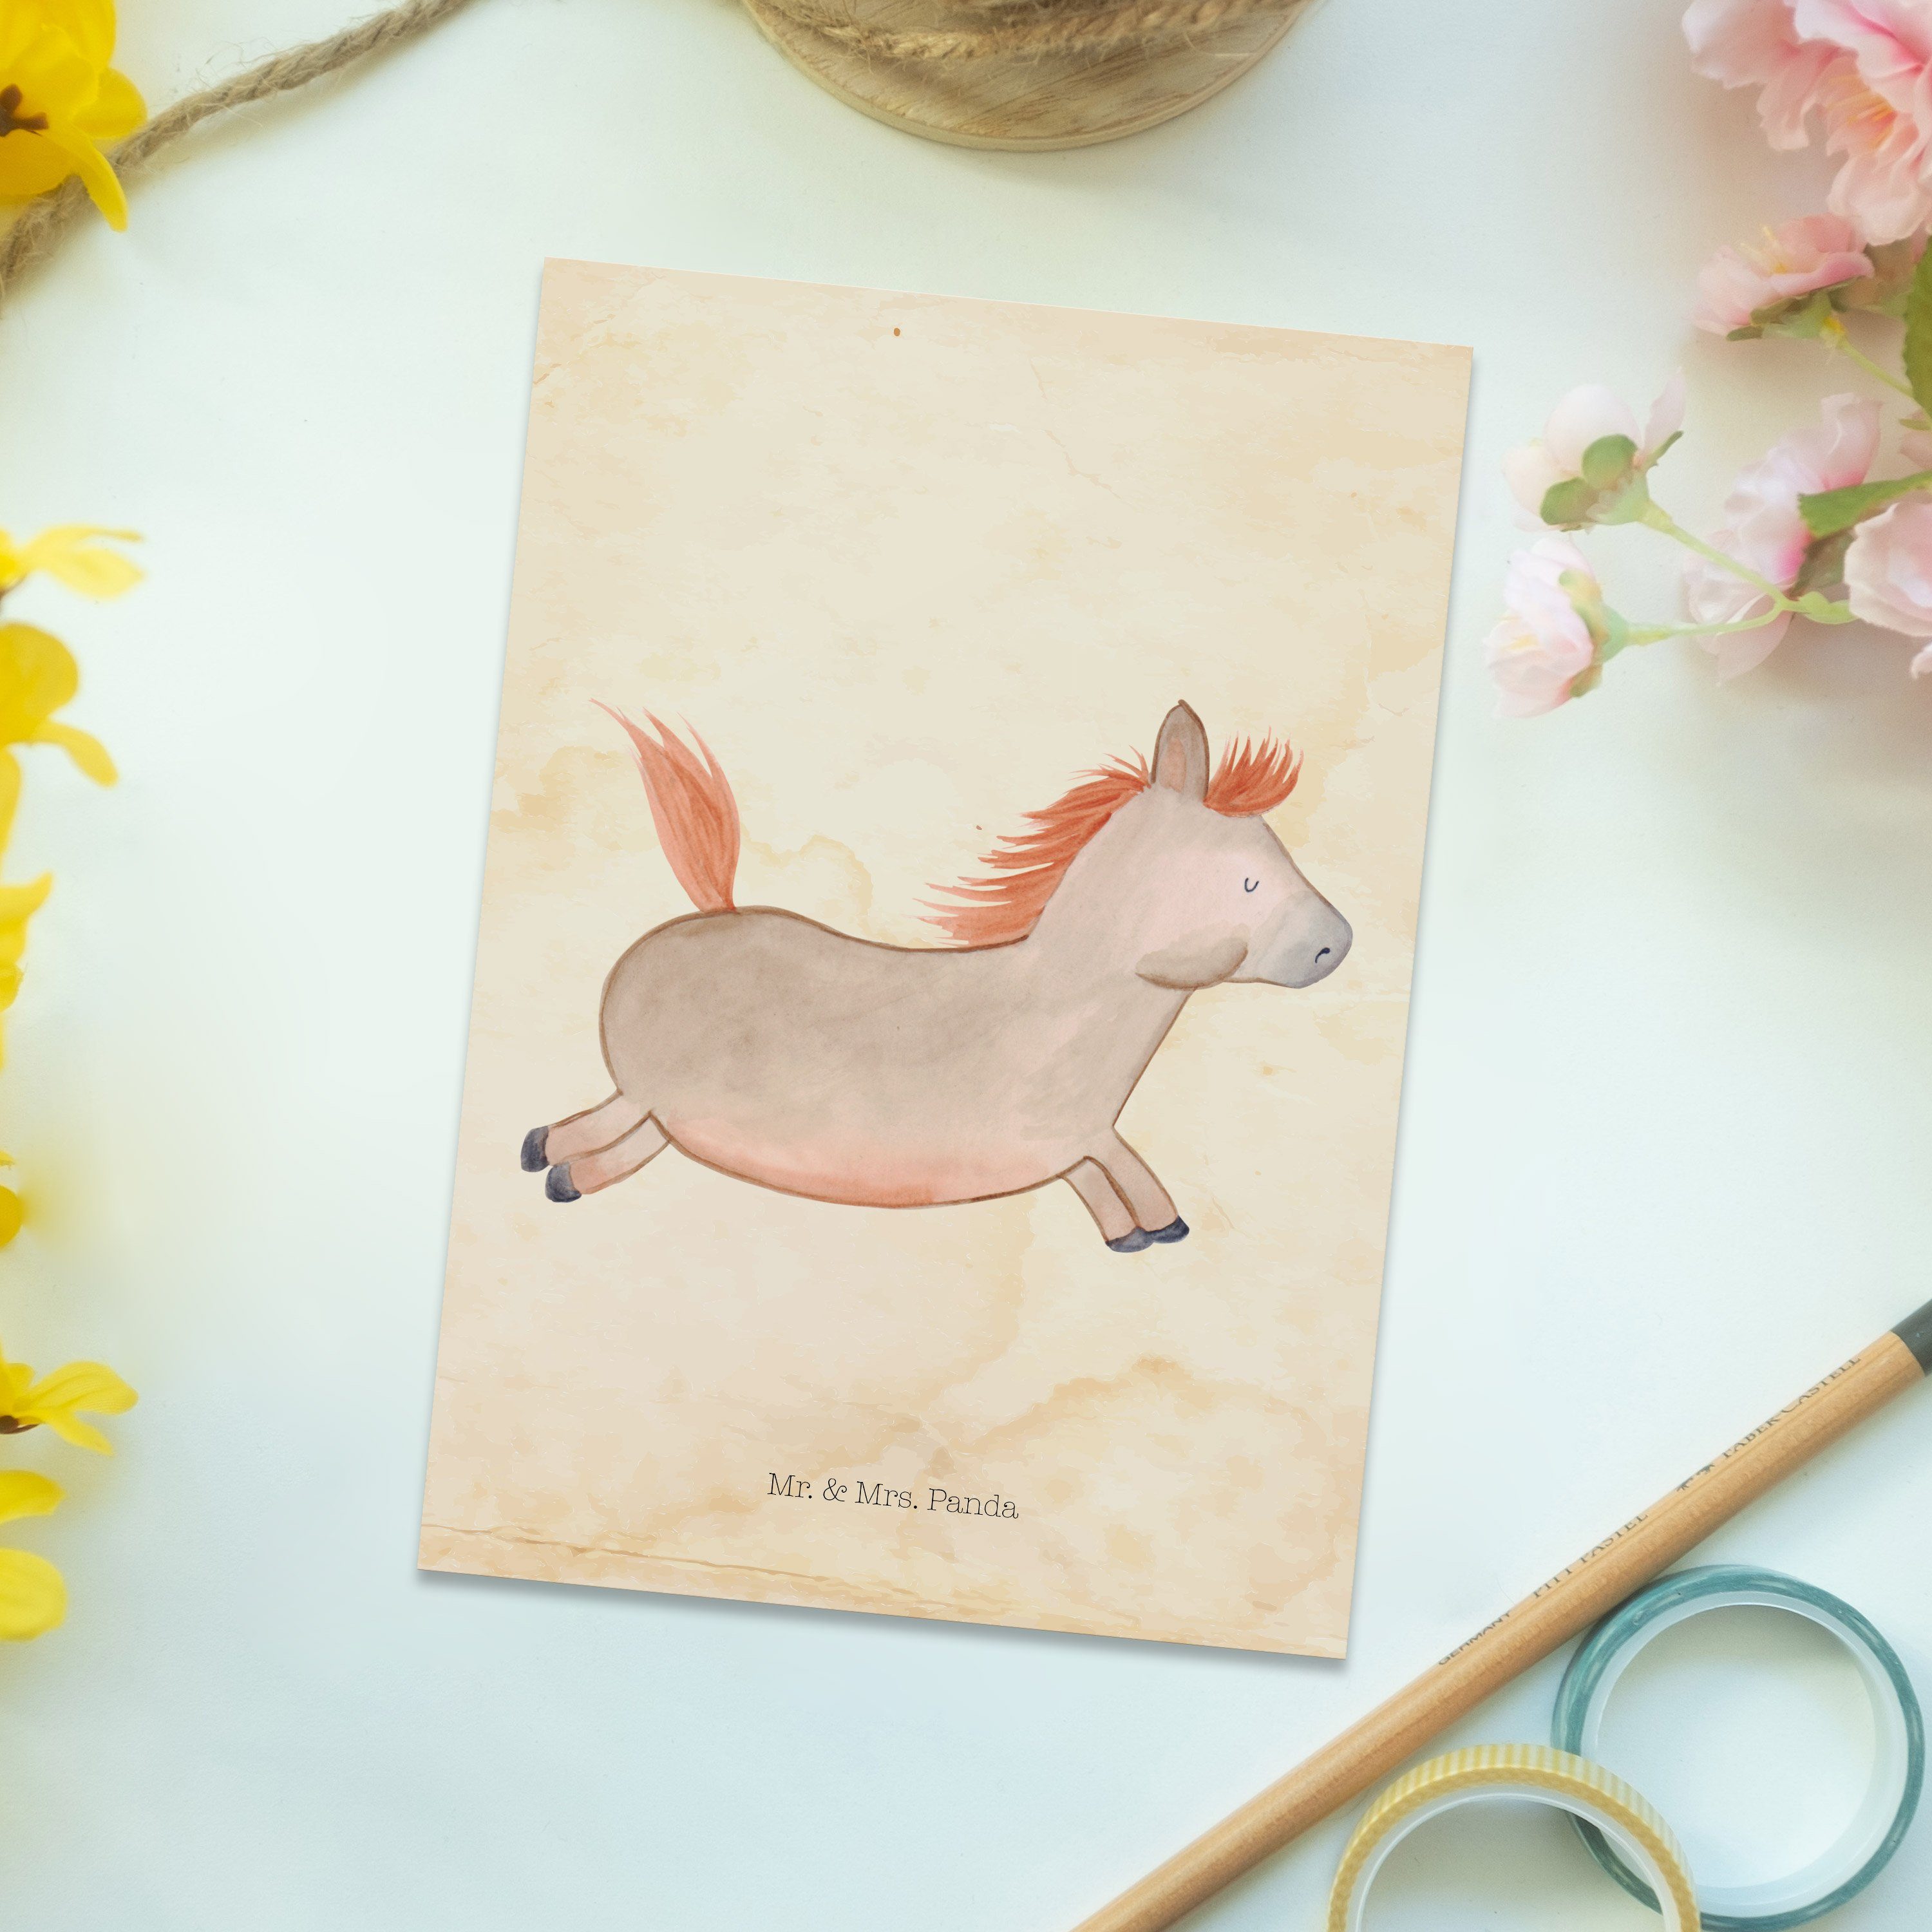 Mrs. Panda - Vintage & springt Pferd Einladun Landwirt, - Mr. Geschenk, Geschenkkarte, Postkarte